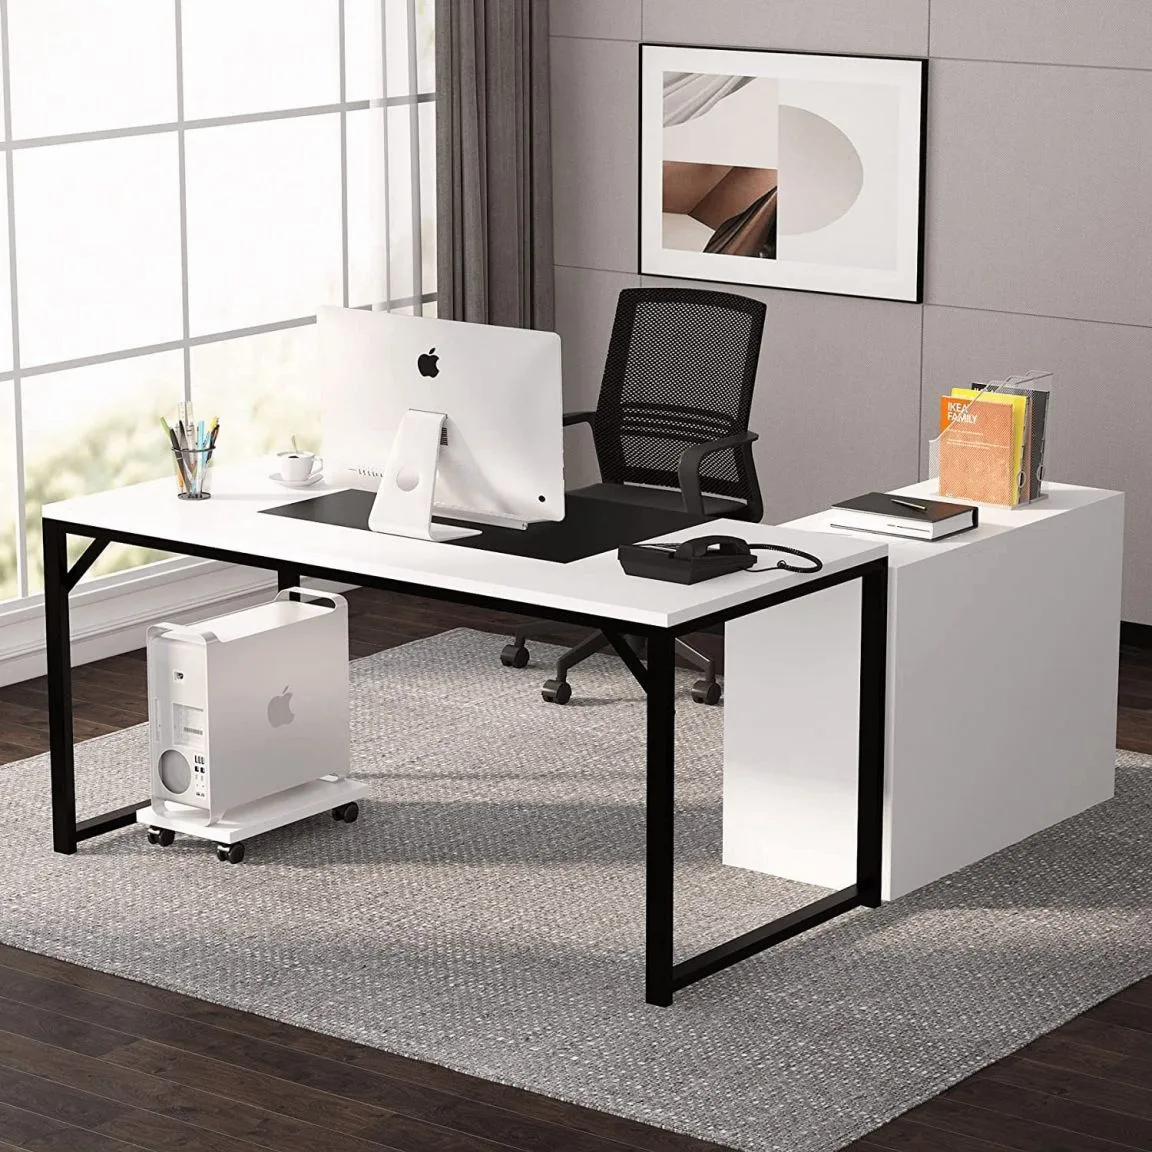 SMA Furniture - Sự lựa chọn hoàn hảo với những mẫu bàn giám đốc cao cấp